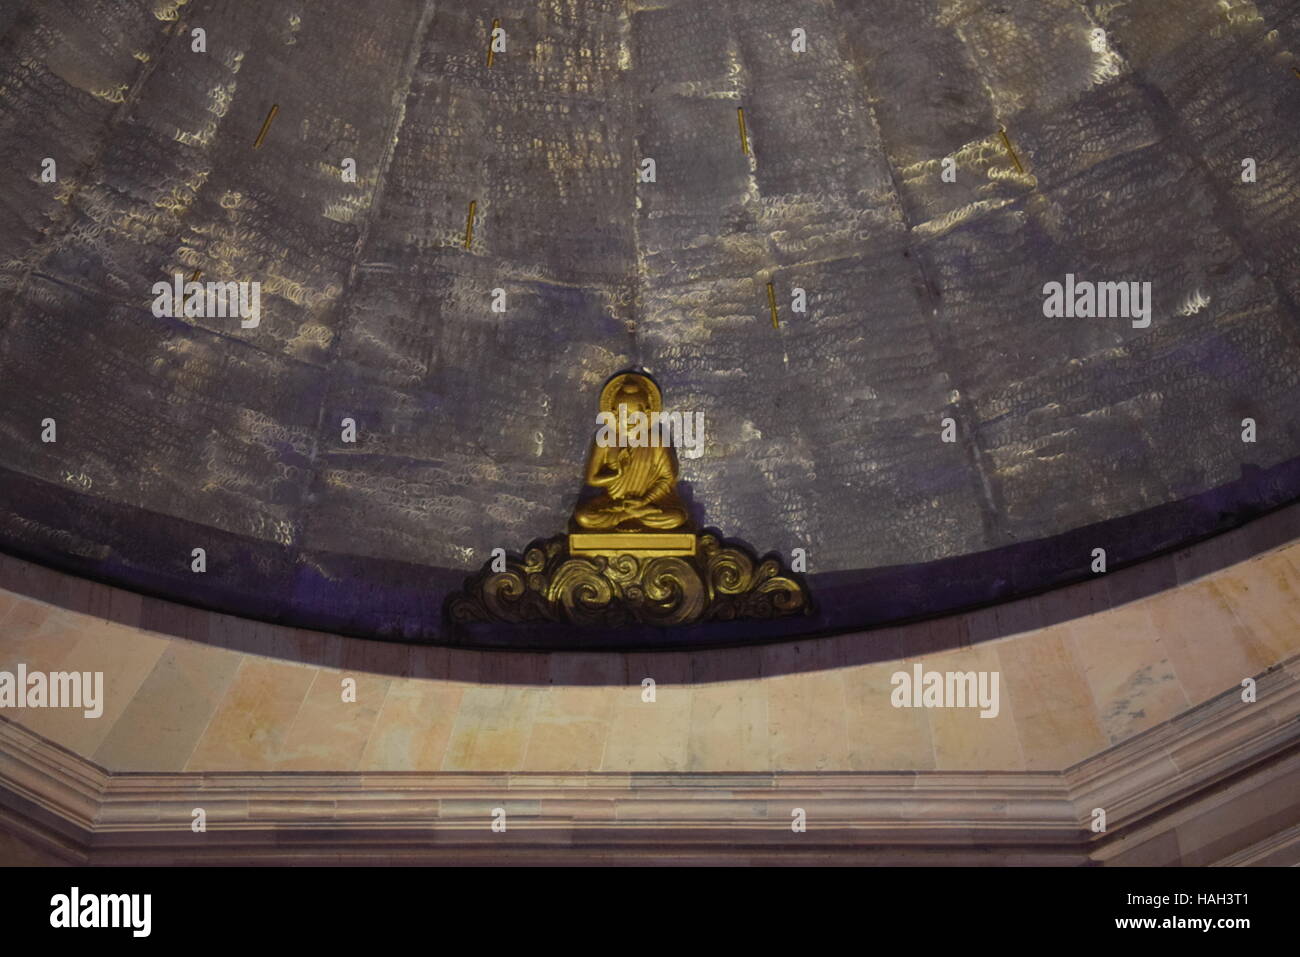 Bouddha sur le dôme d'un édifice Banque D'Images